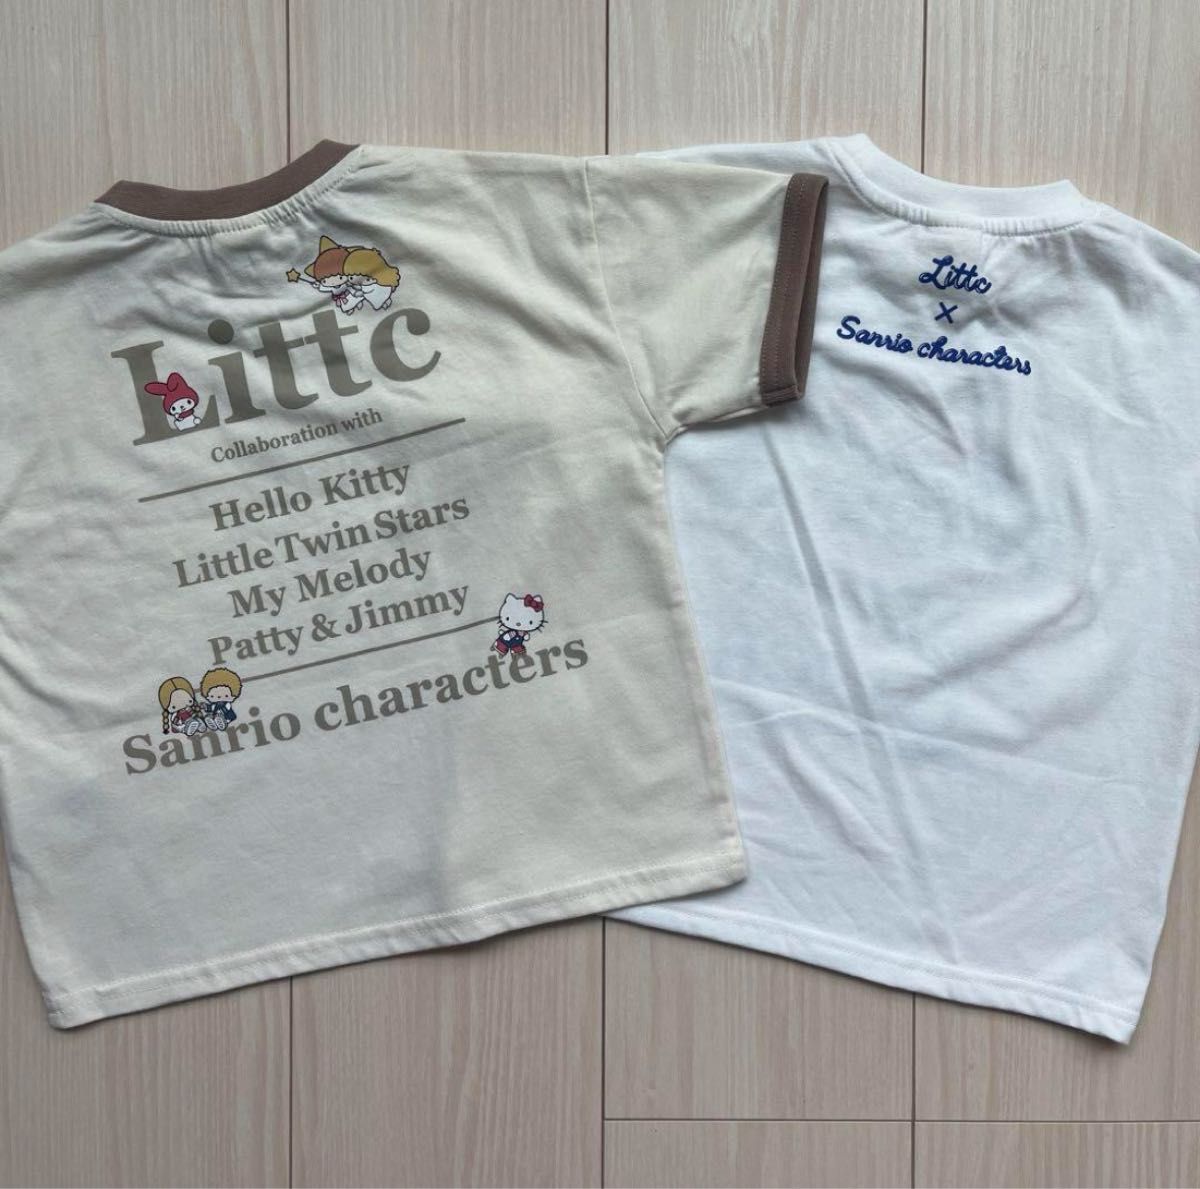 【サンリオ】リトシー コラボ キティ☆マイメロ☆キキララ キャラクター 半袖 Tシャツ 2点セット 90